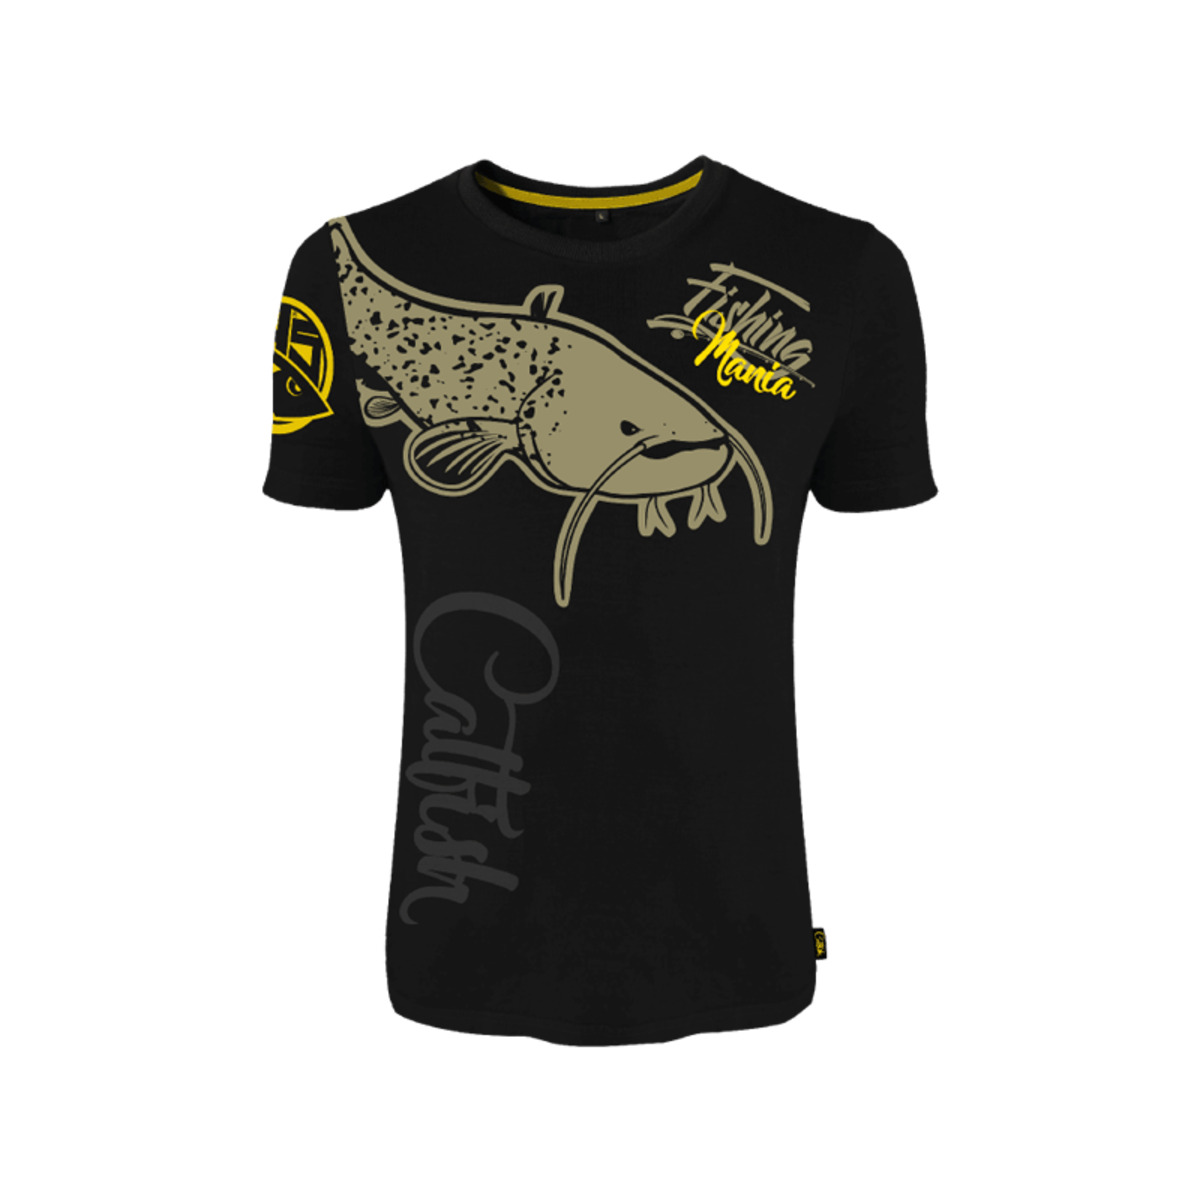 Hotspot Design T-shirt Fishing Mania Catfish - XL